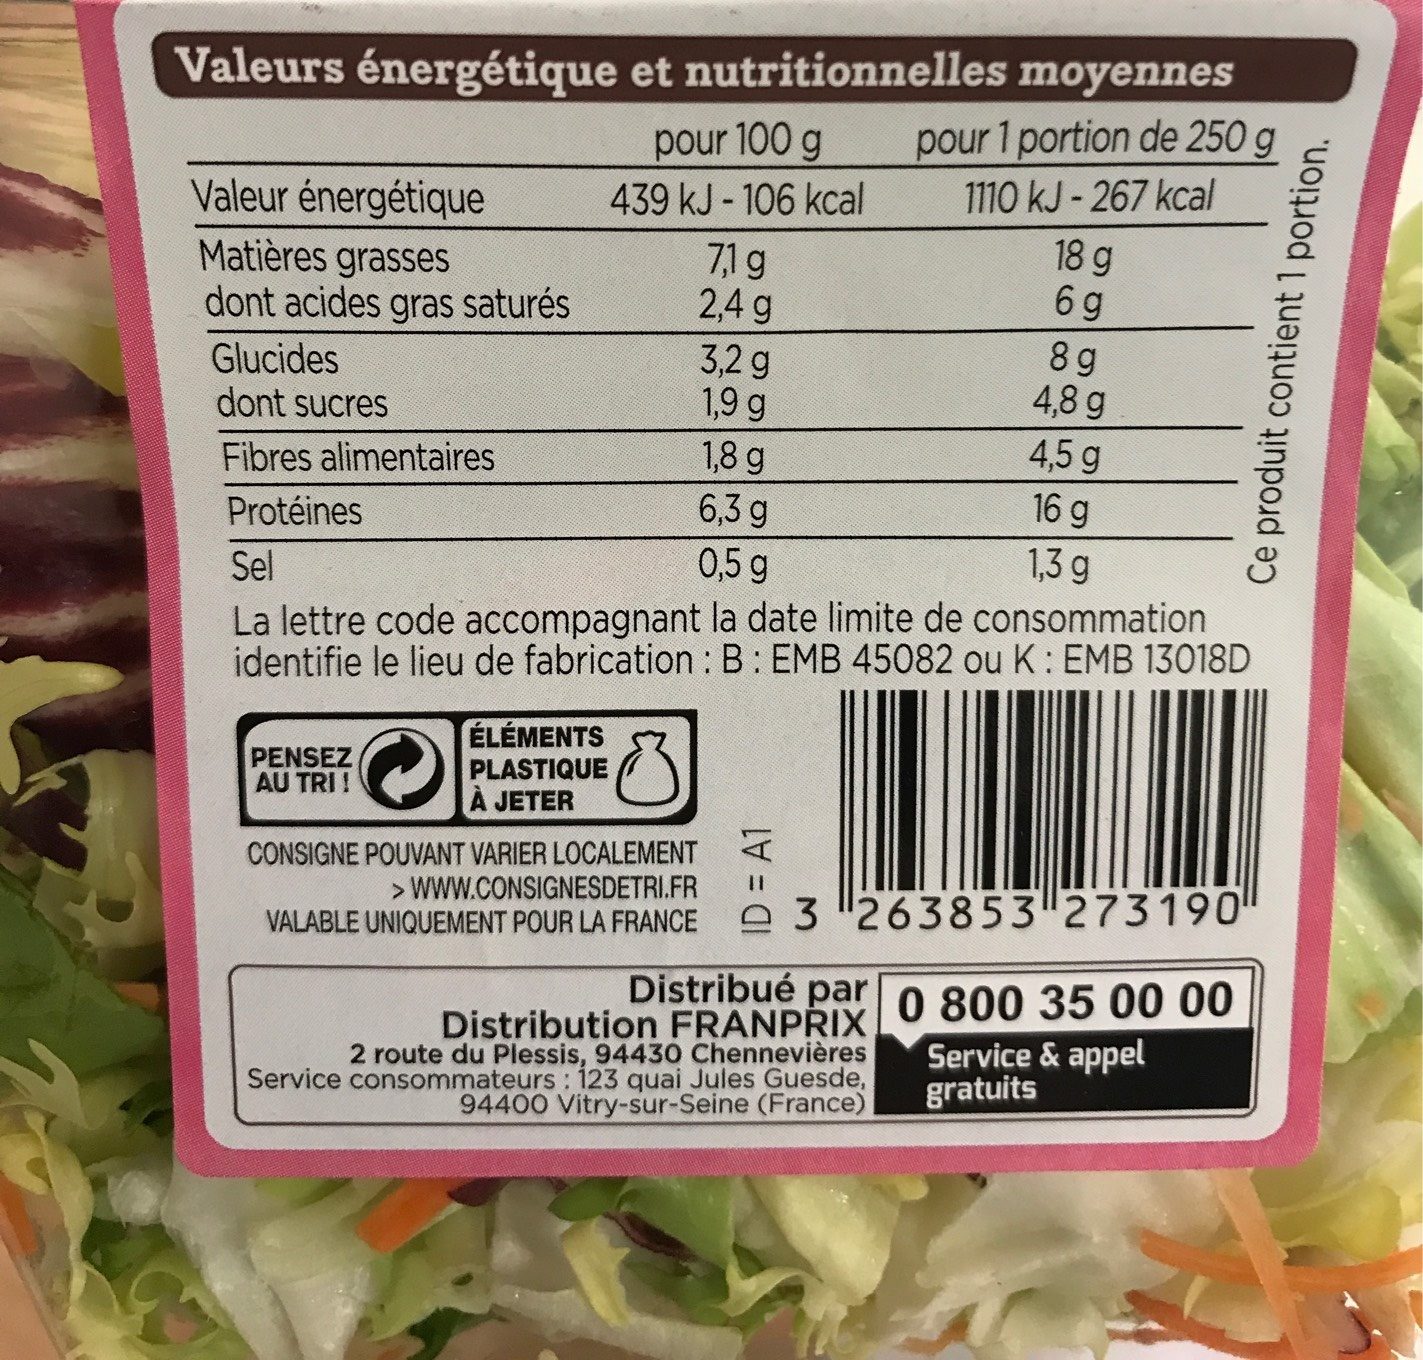 Salade jambon emmental - Voedingswaarden - fr